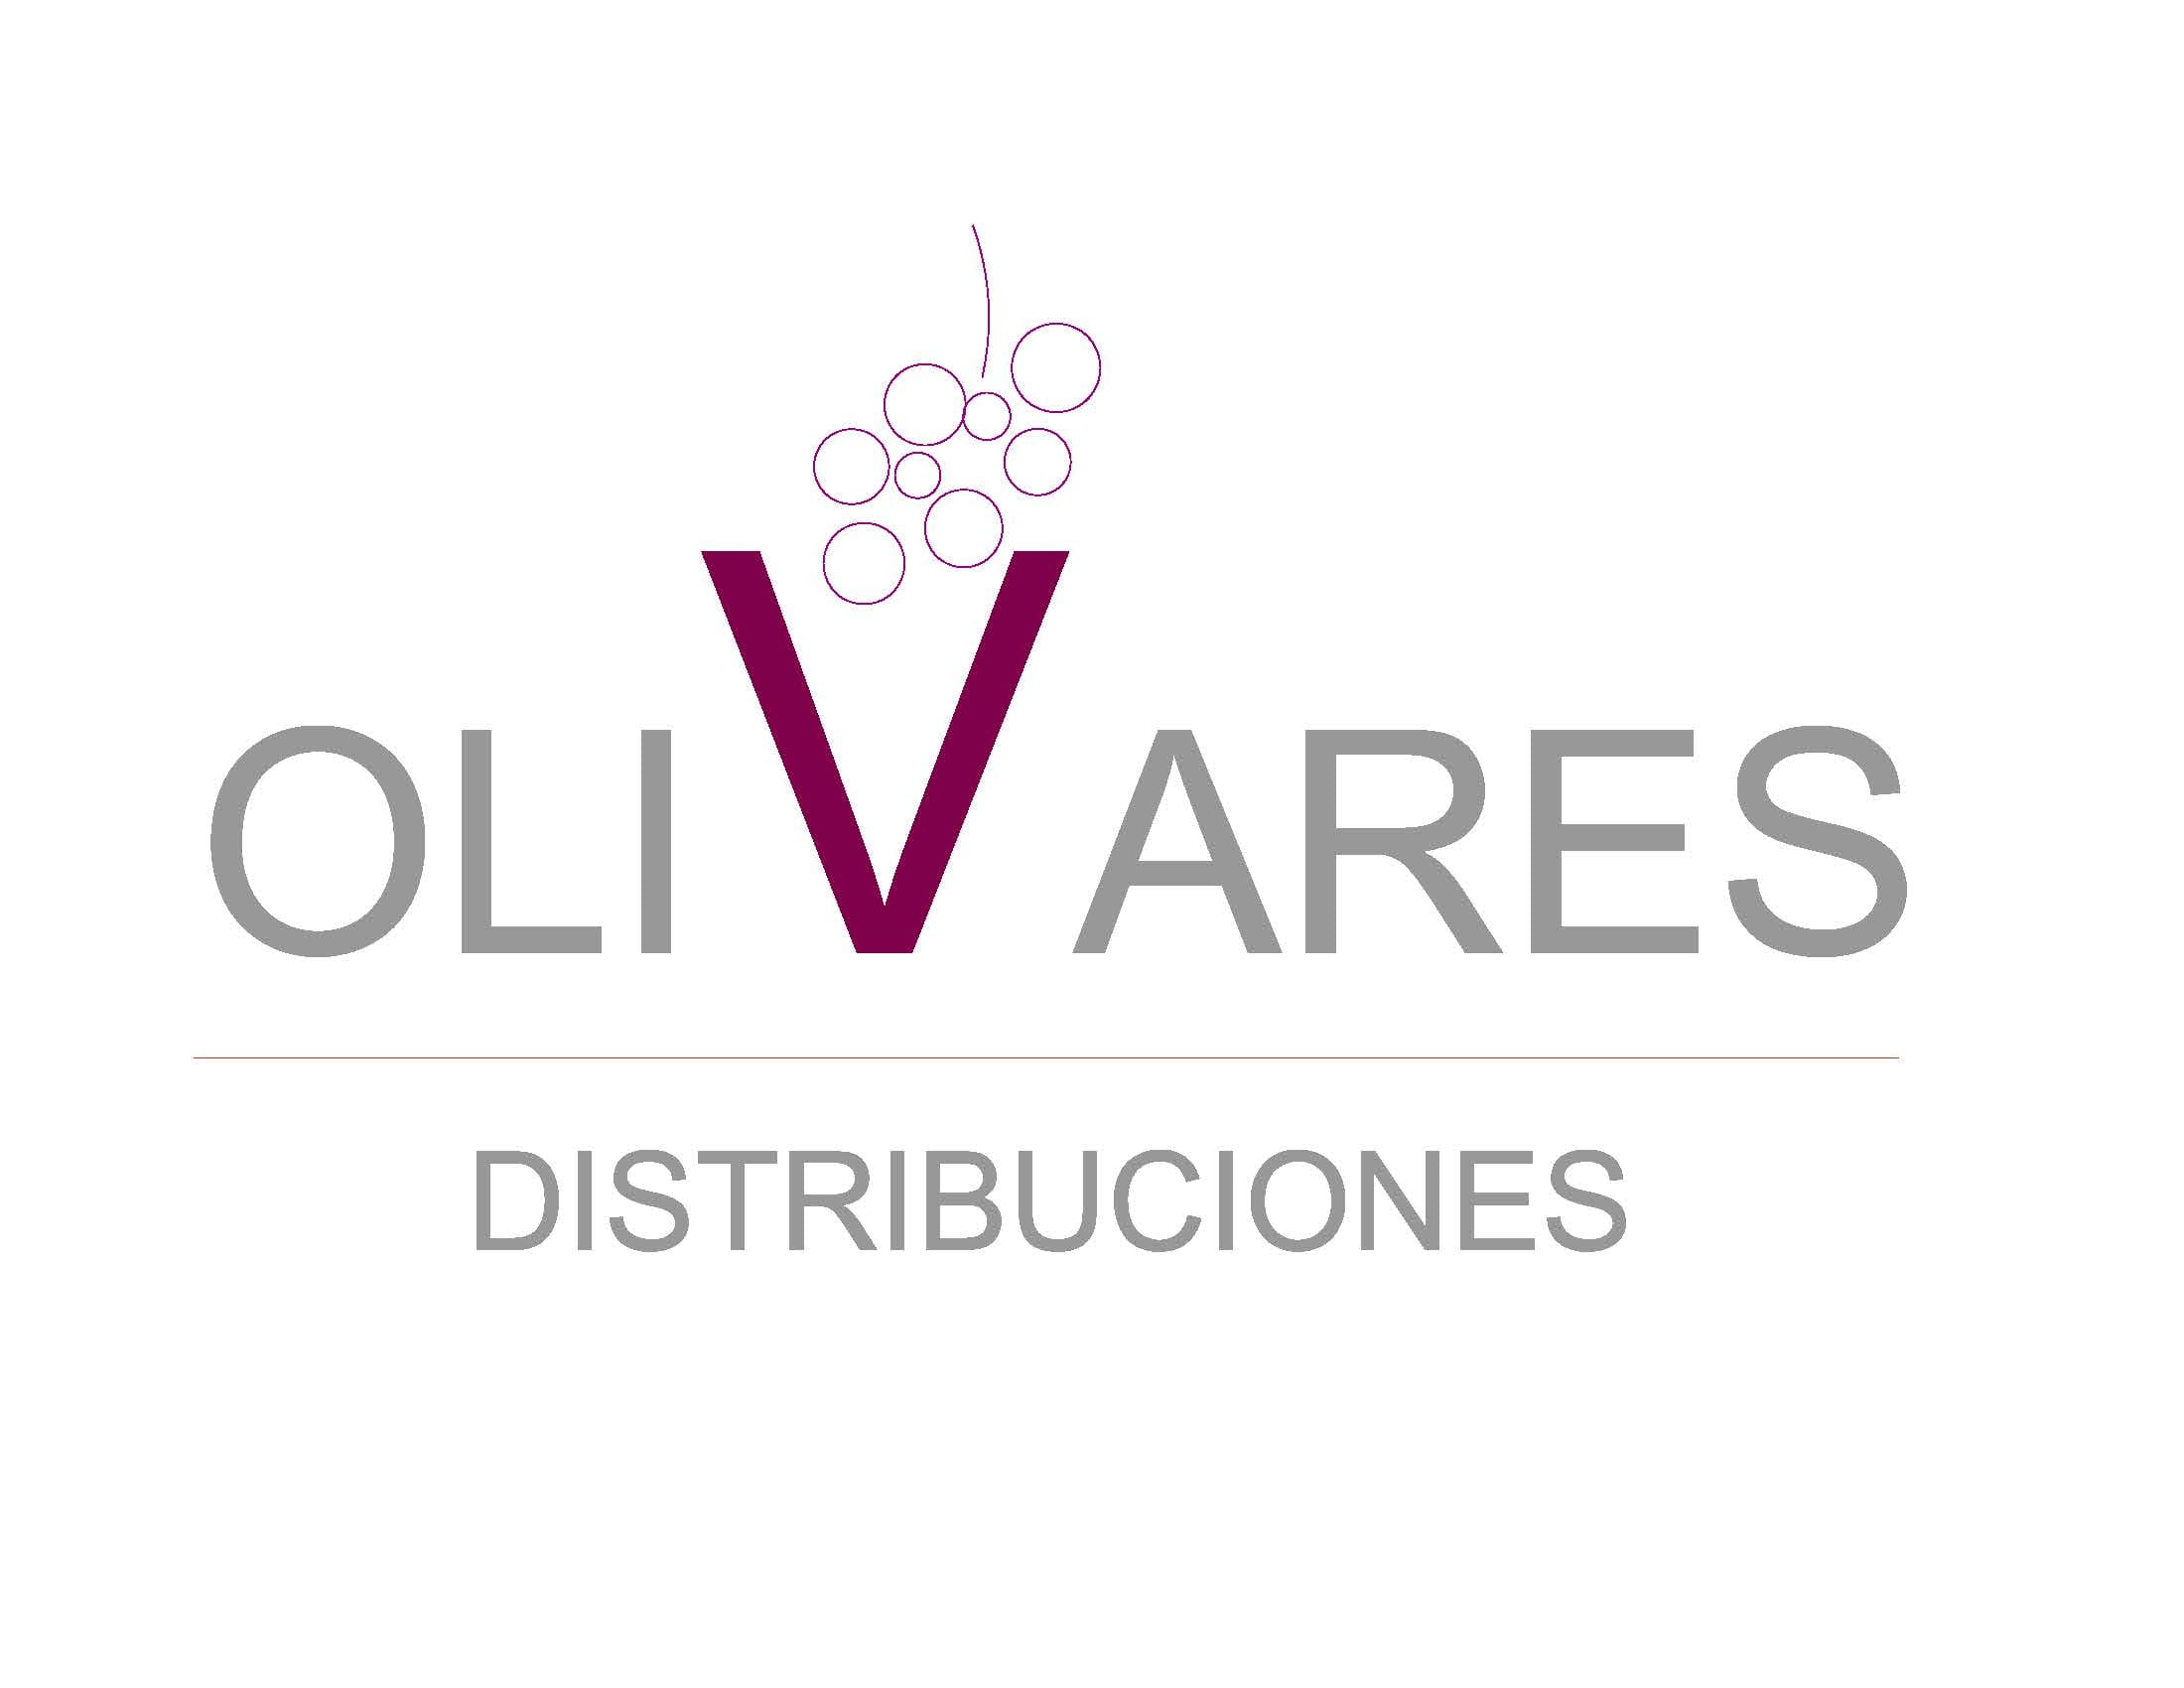 Olivares Distribuciones